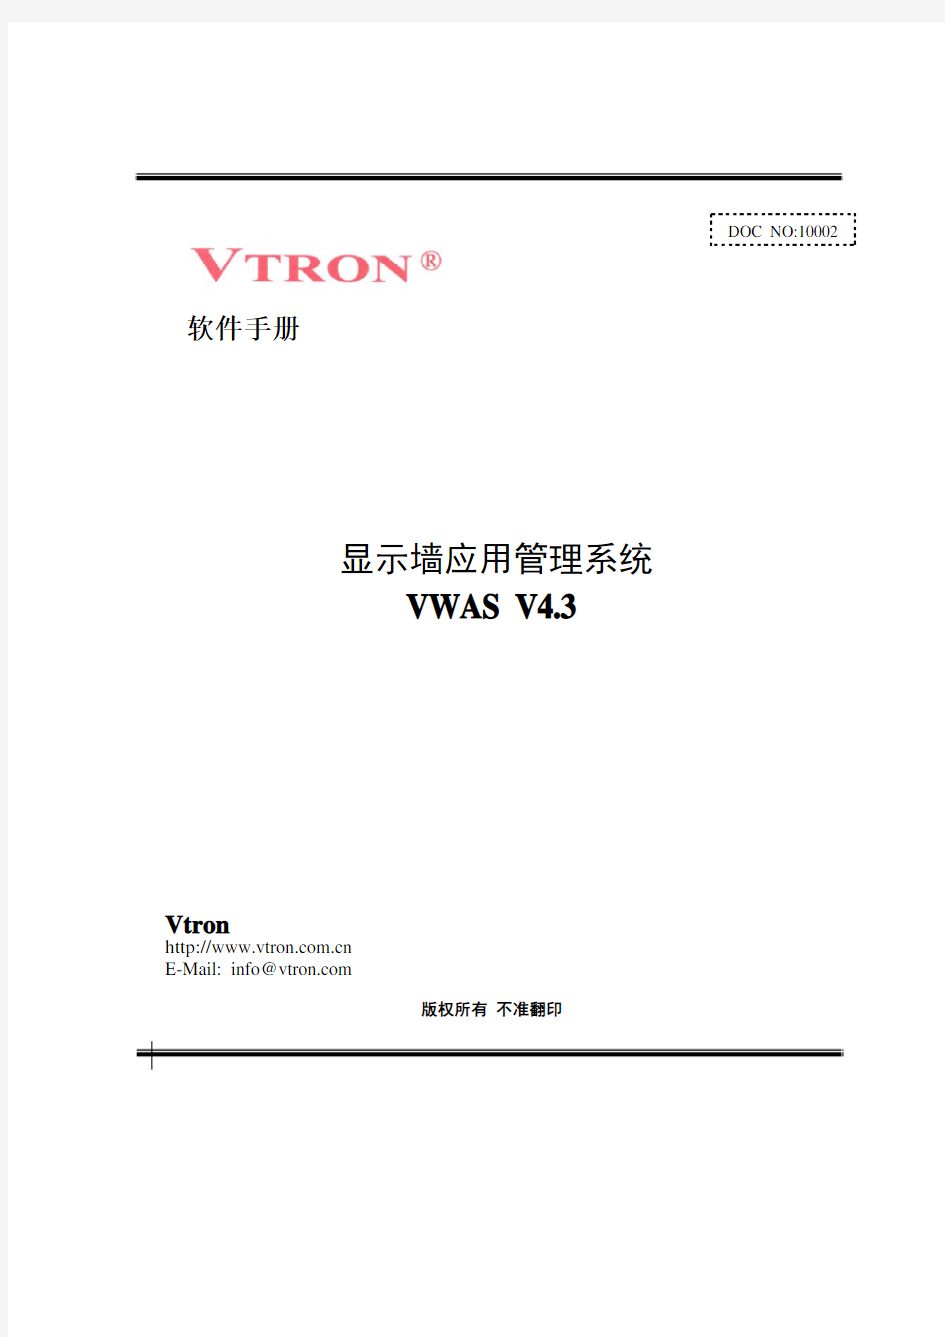 显示墙应用管理系统VWAS4.3用户手册-_简体中文版_V1.0